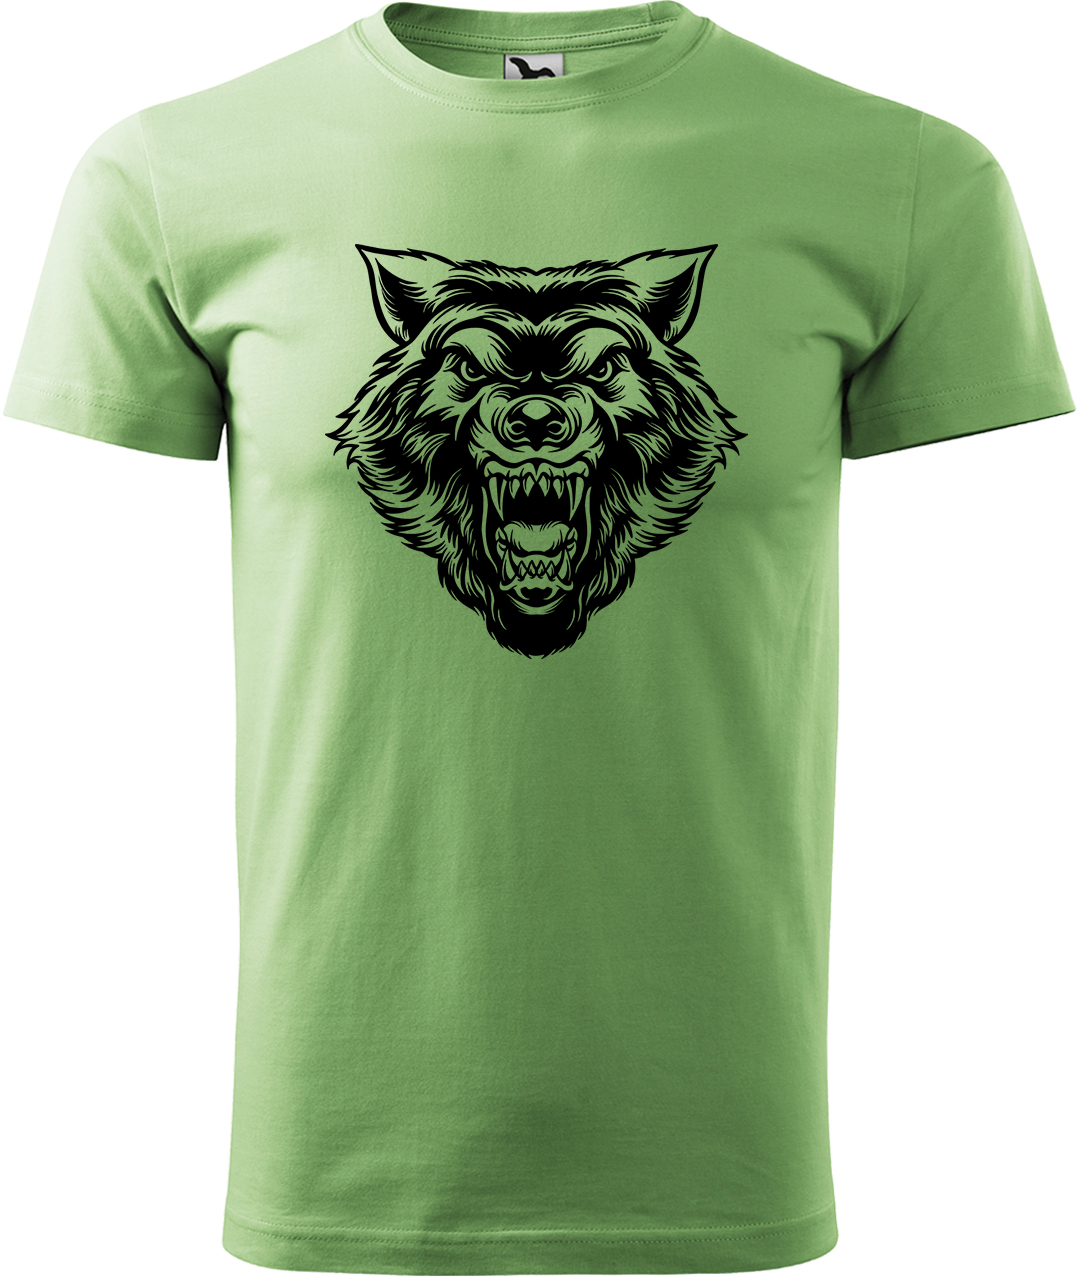 Pánské tričko s vlkem - Rozzuřený vlk Velikost: M, Barva: Trávově zelená (39), Střih: pánský